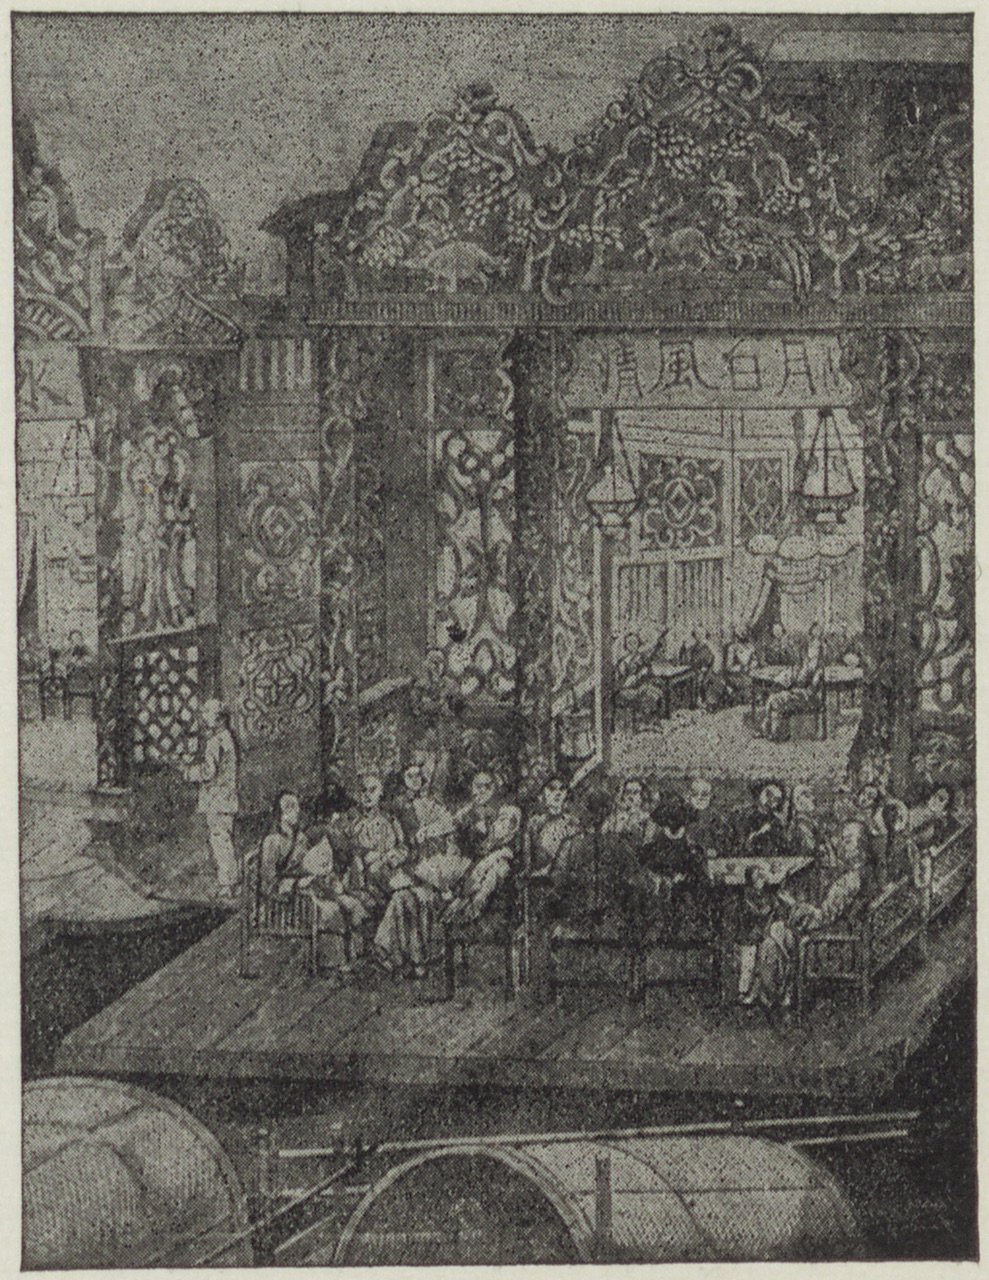 Abbildung eines sog. Blumenschiffs (Magnus-Hirschfeld-Gesellschaft Public Domain Mark)